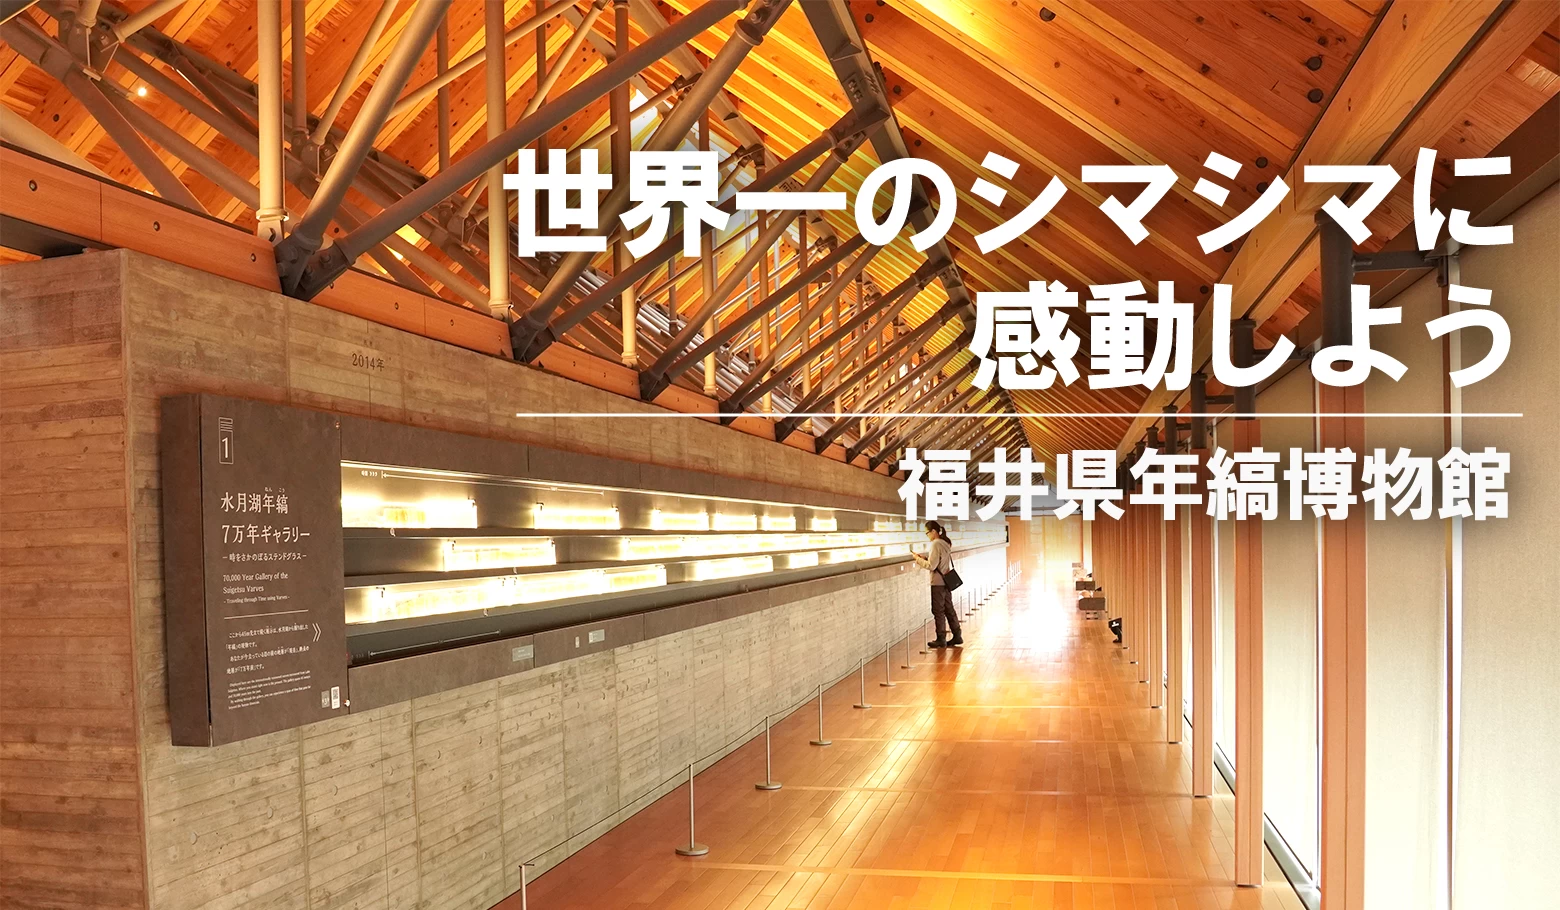 7万年分の歴史が目の前に！ 福井県年縞博物館で世界一のシマシマに感動しよう